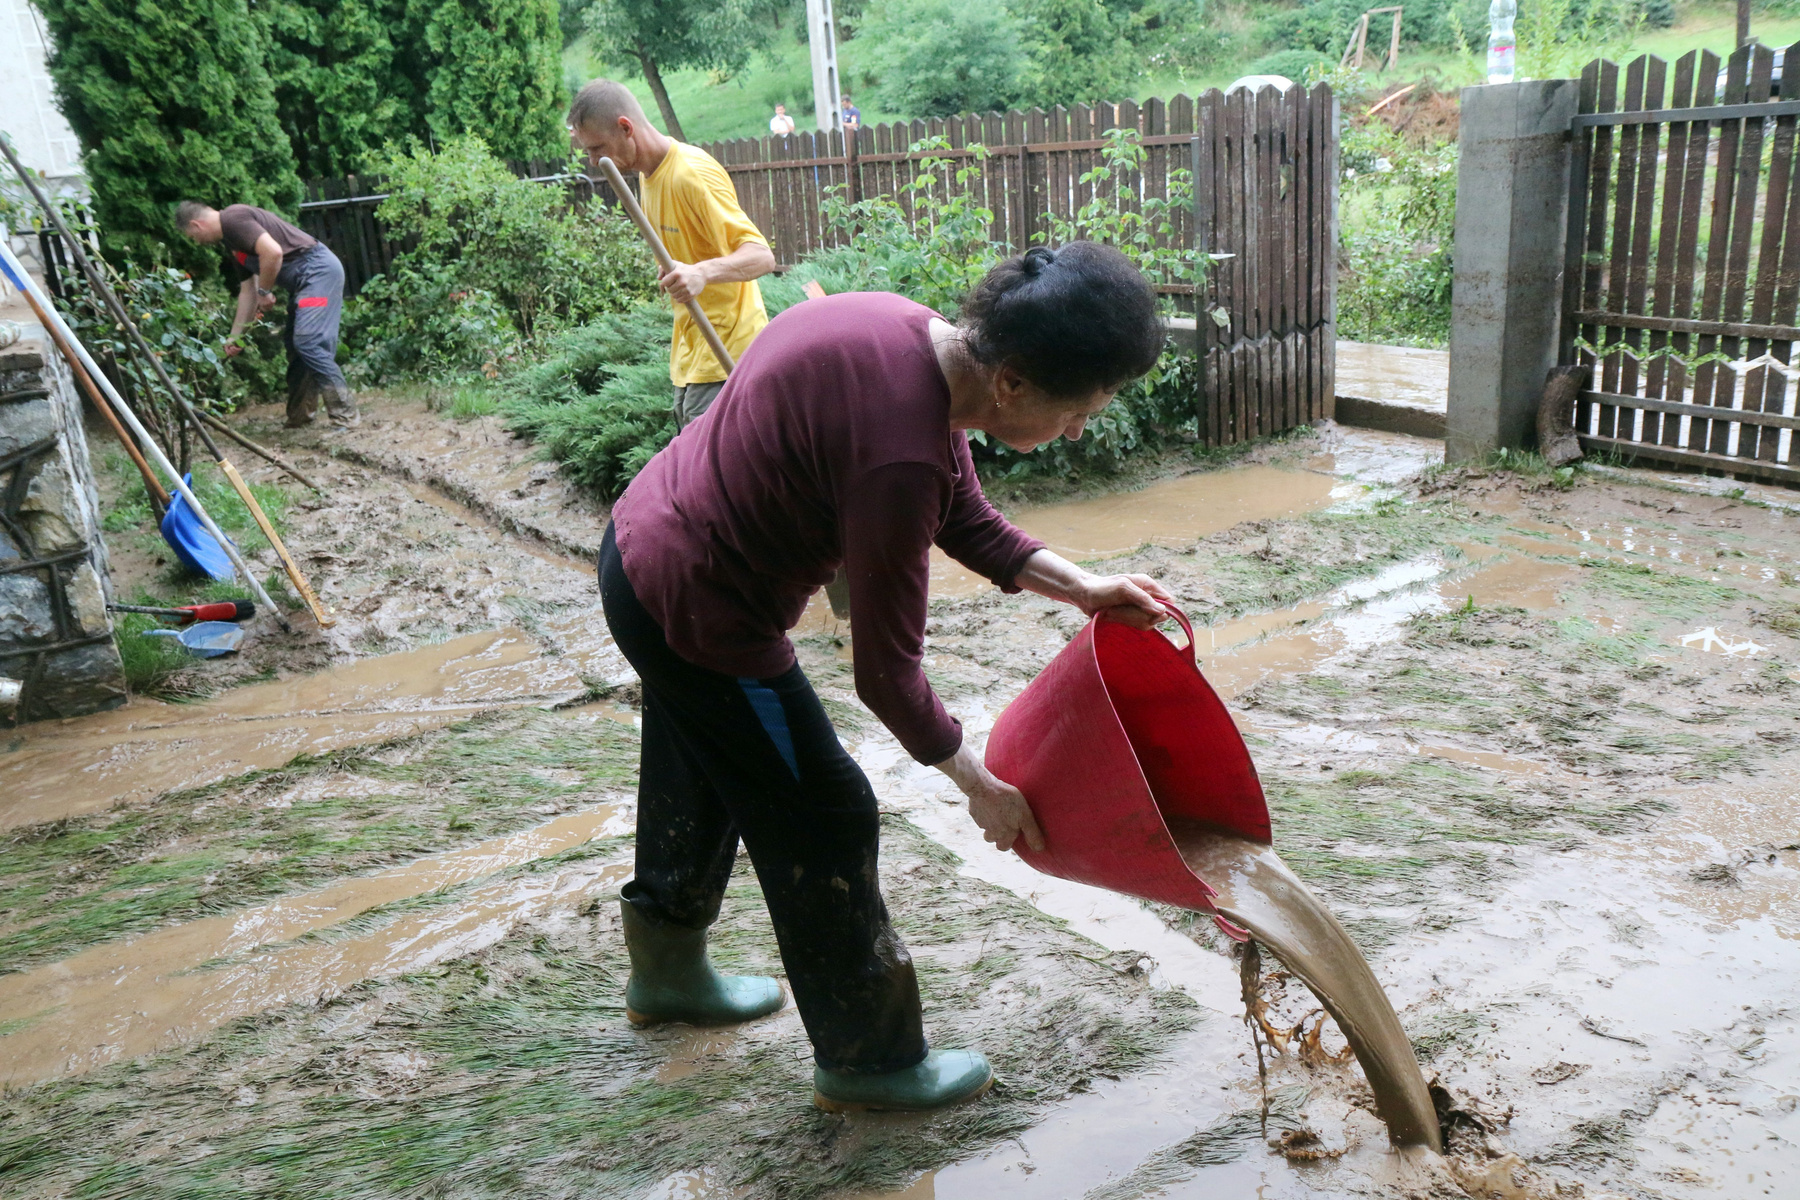 Takarítják a hírtelen lezúduló nagy mennyiségű eső hordalékát a Baranya megyei Szebényen